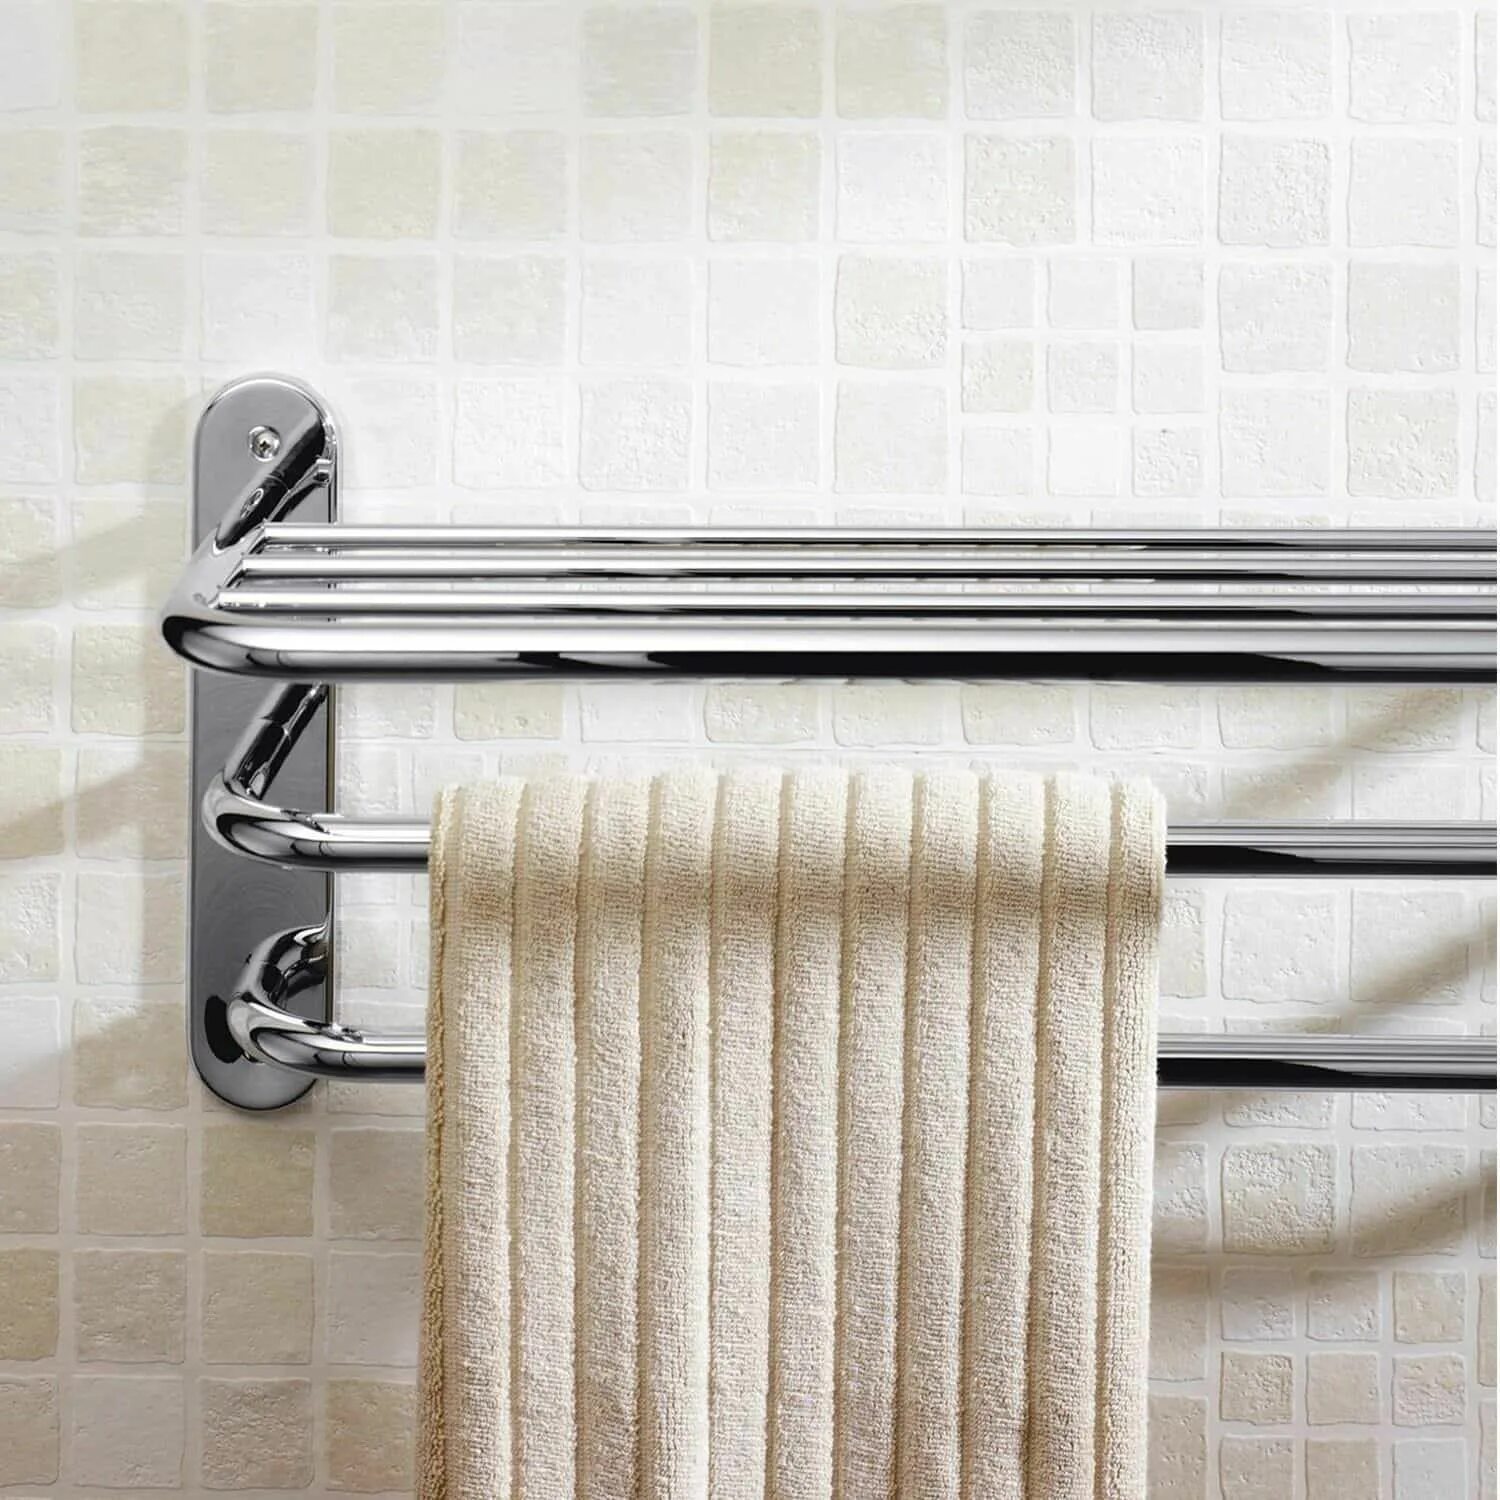 Высуши полотенце. YLT 0313а сушилка Towel Rack. Сушилка для белья Stainless Steel Towel Rack. Полотенце сушилка для ванны. Держатель для полотенец в ванну.